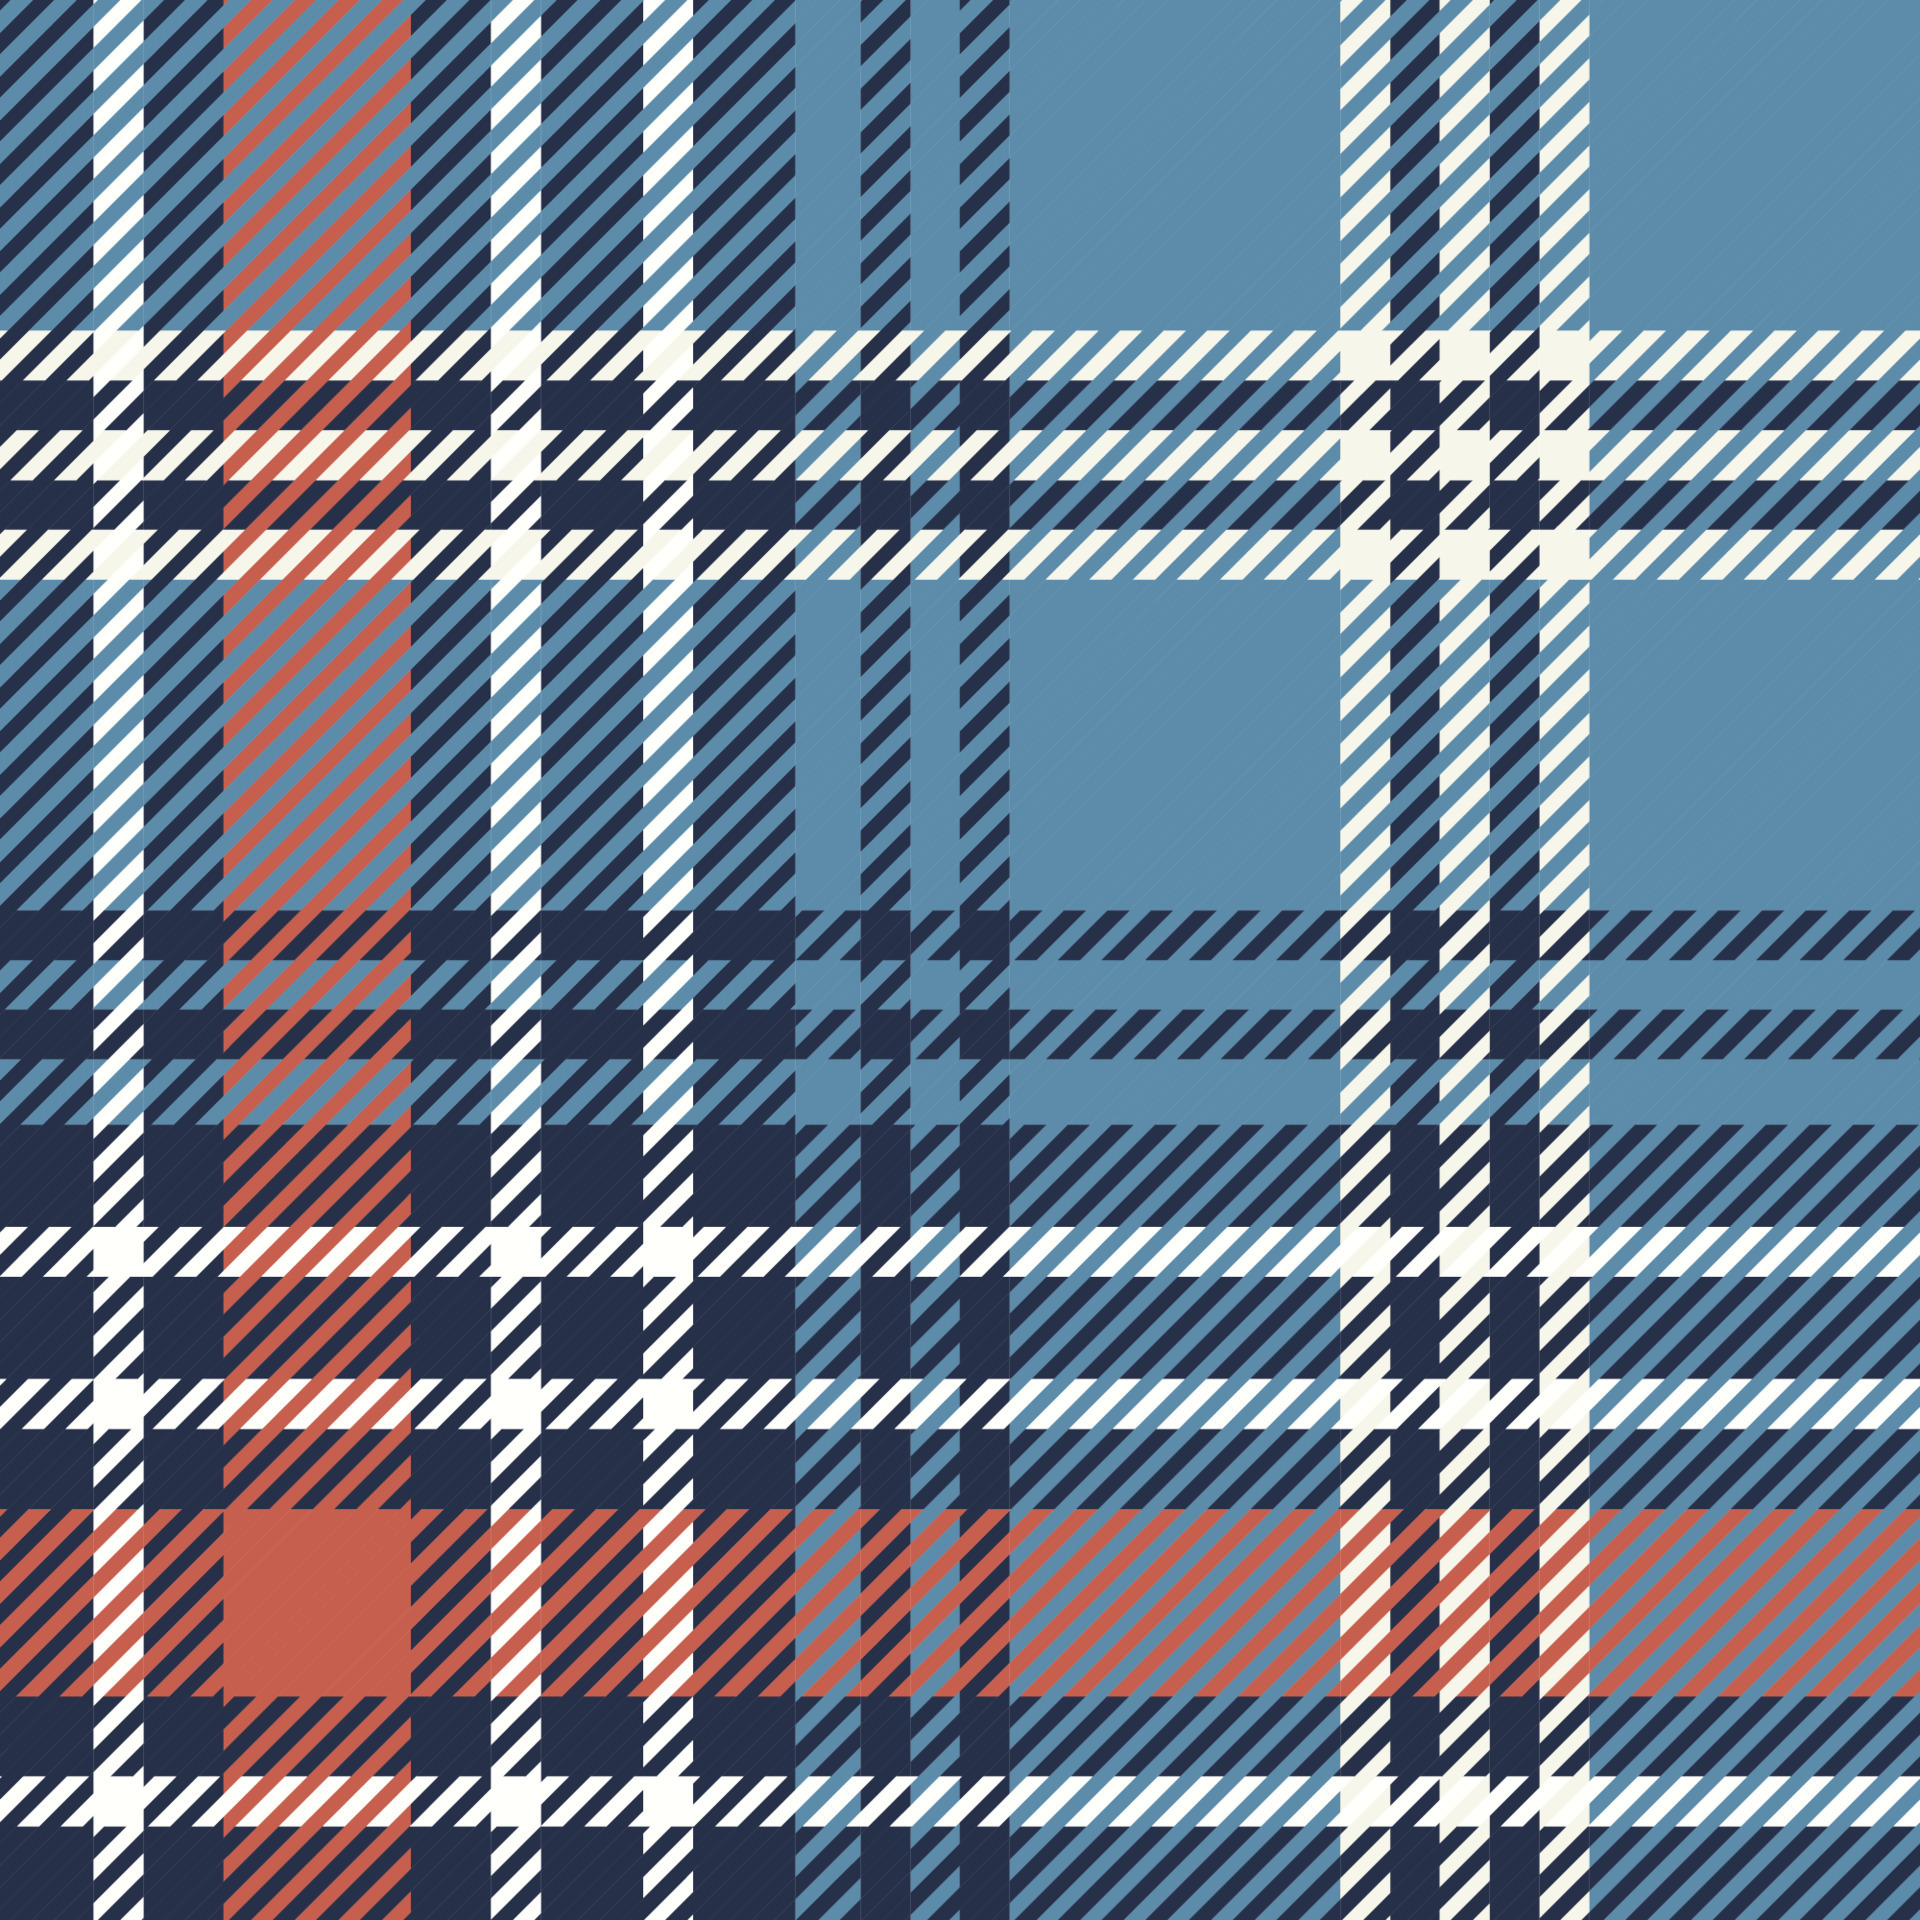 xadrez de textura em cores de tom azul. padrão sem emenda escocês xadrez  tartan. textura para capa, toalha de mesa, roupas, camisas, vestidos,  papel, roupa de cama, cobertores e outros produtos têxteis